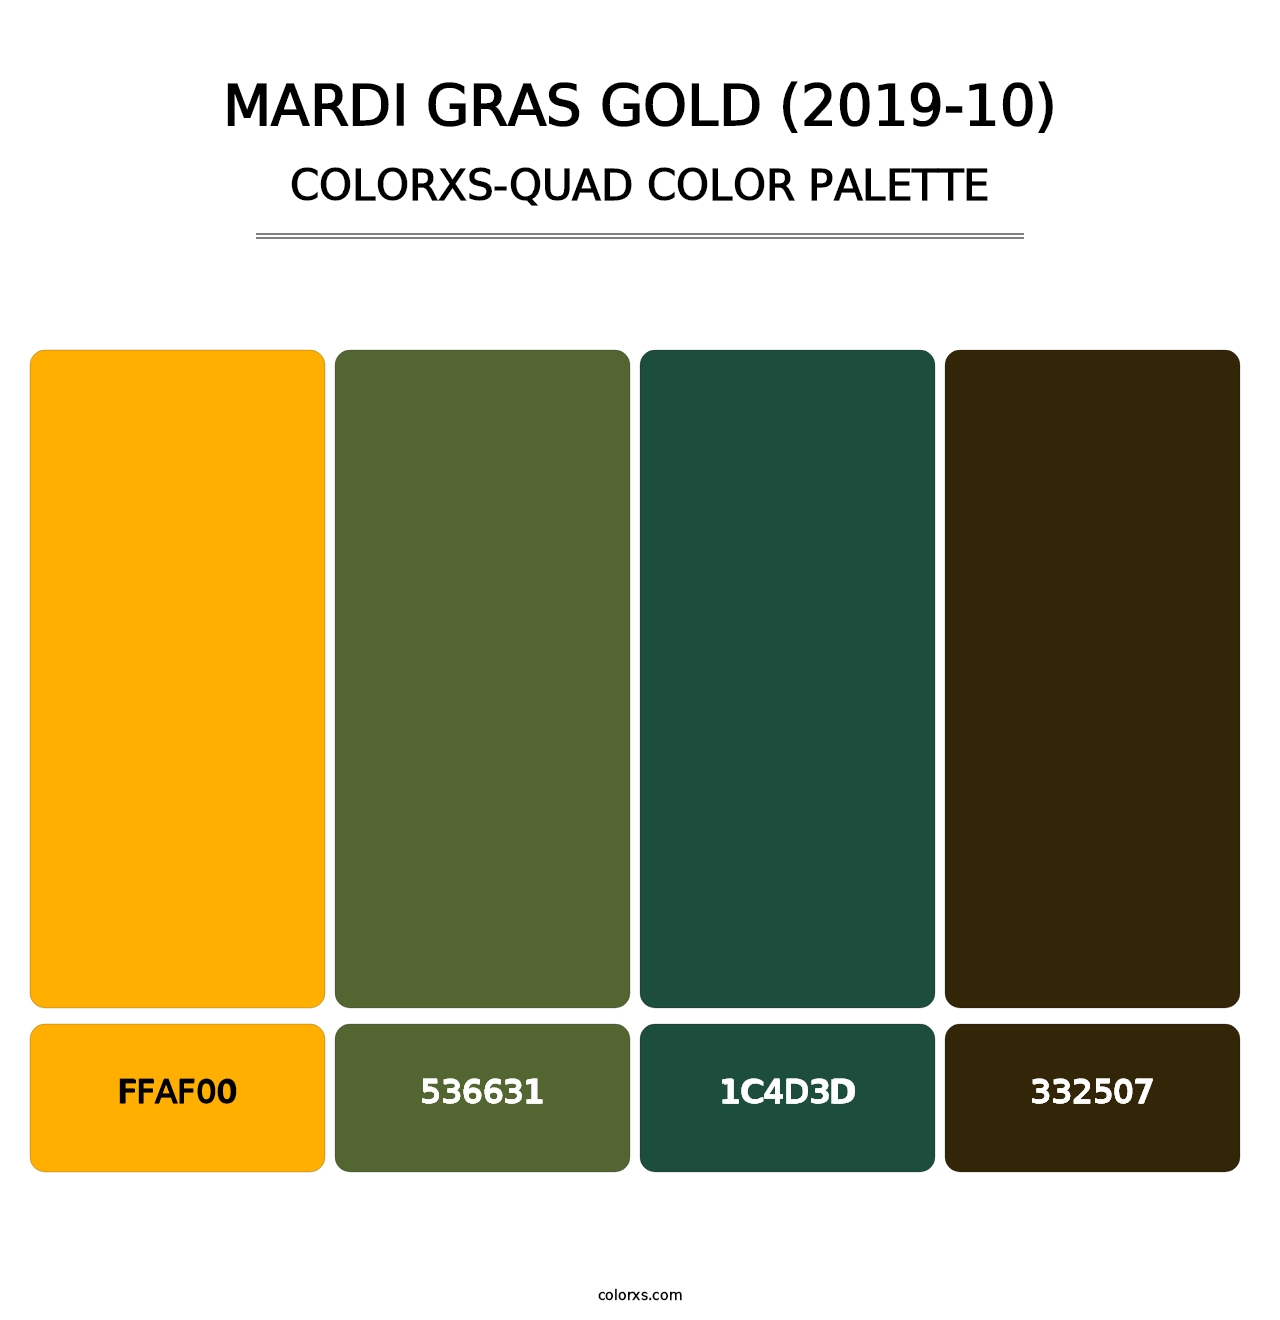 Mardi Gras Gold (2019-10) - Colorxs Quad Palette